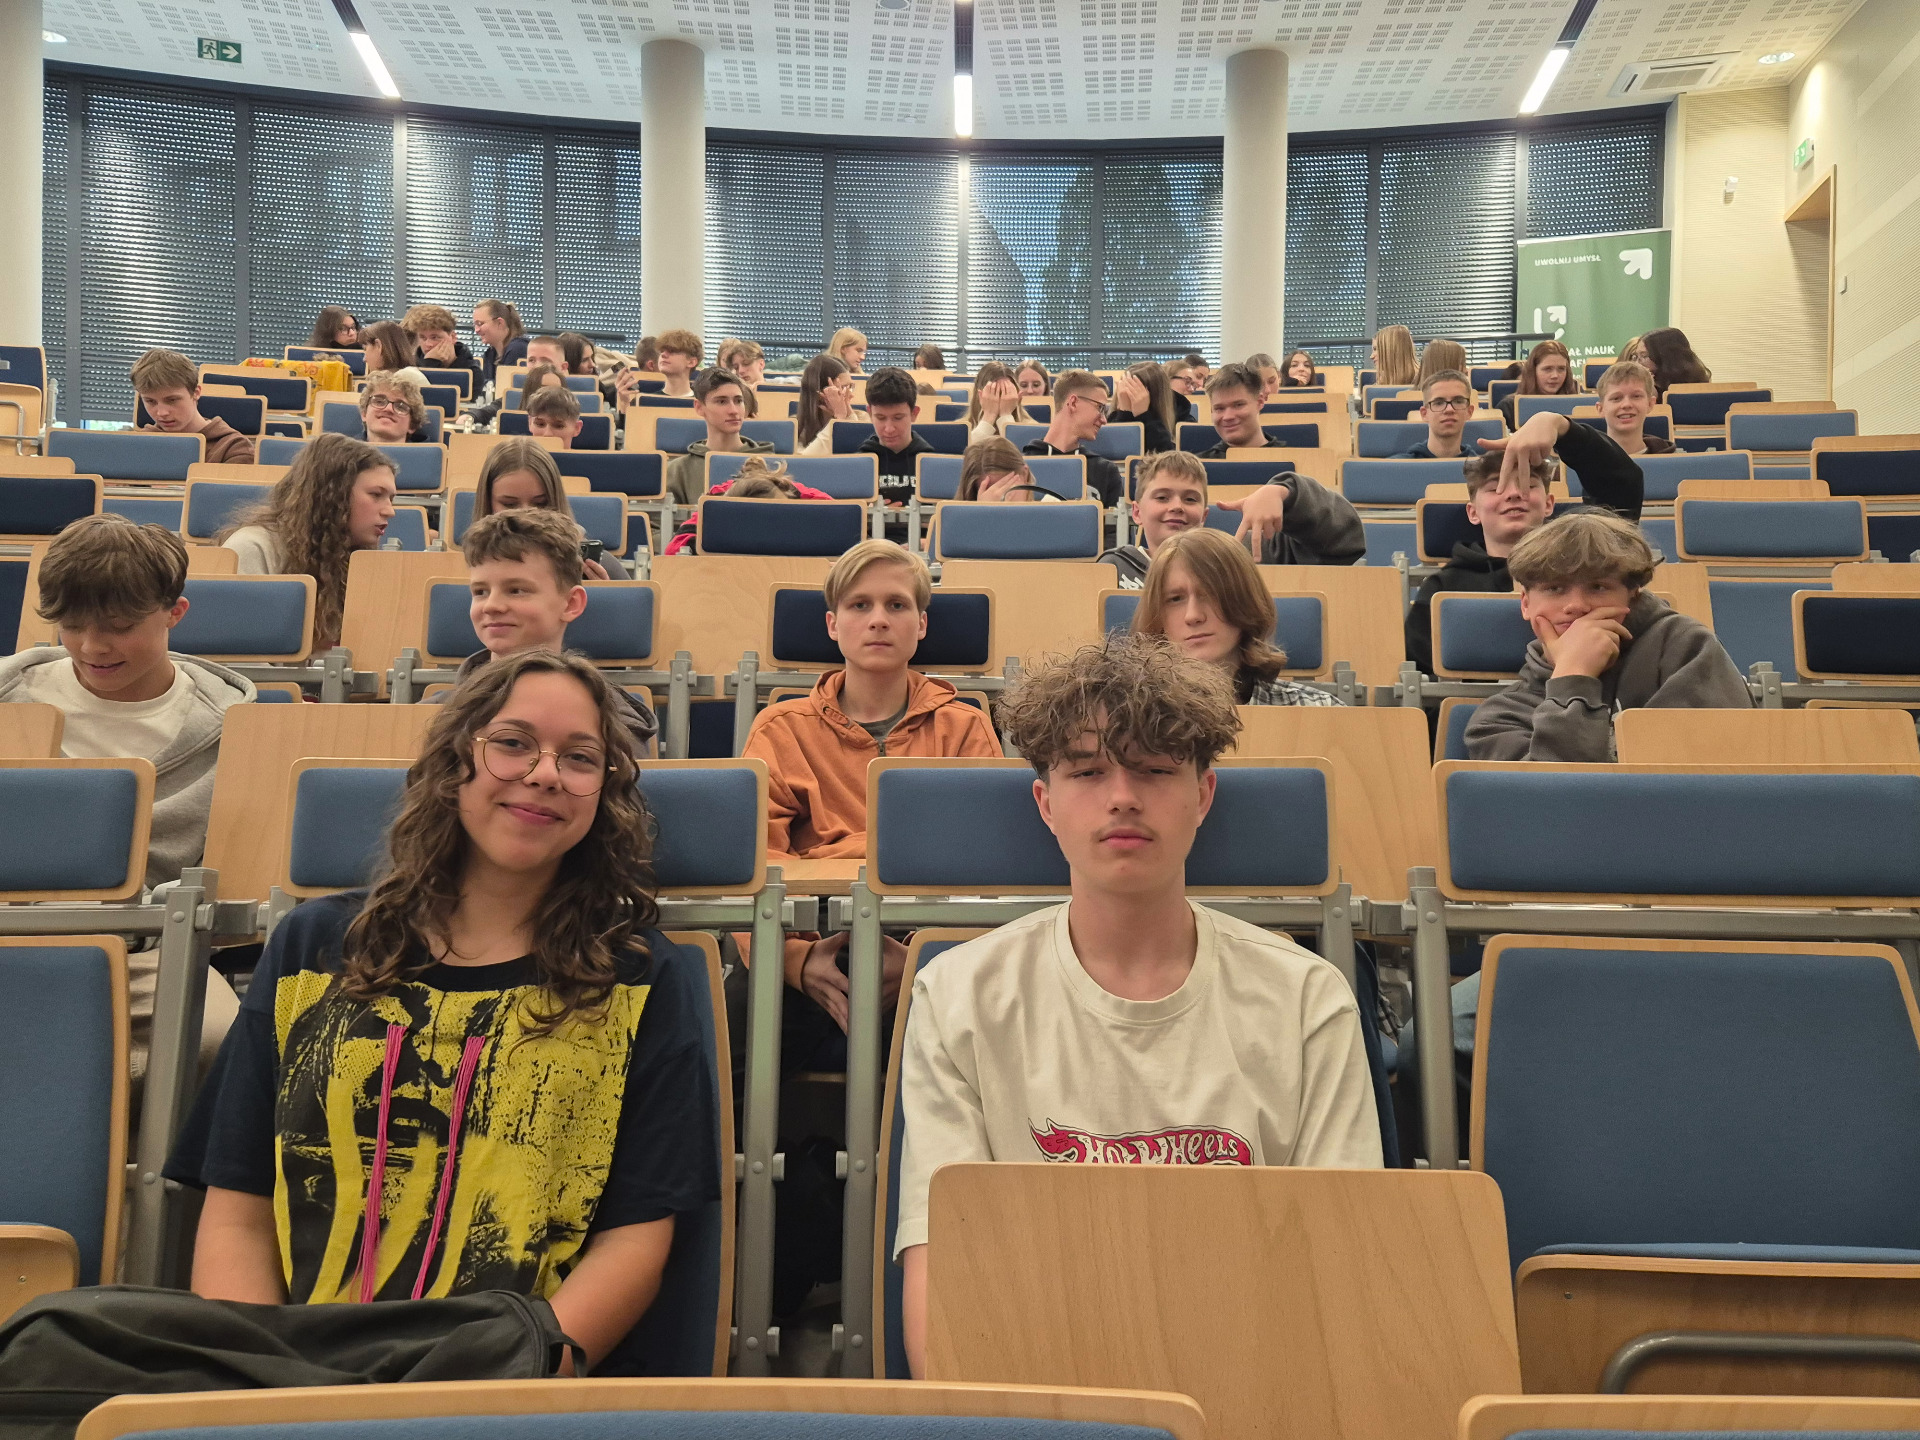 Uczniowie podczas wykładów odbywających się na auli im. prof. S. Liszewskiego